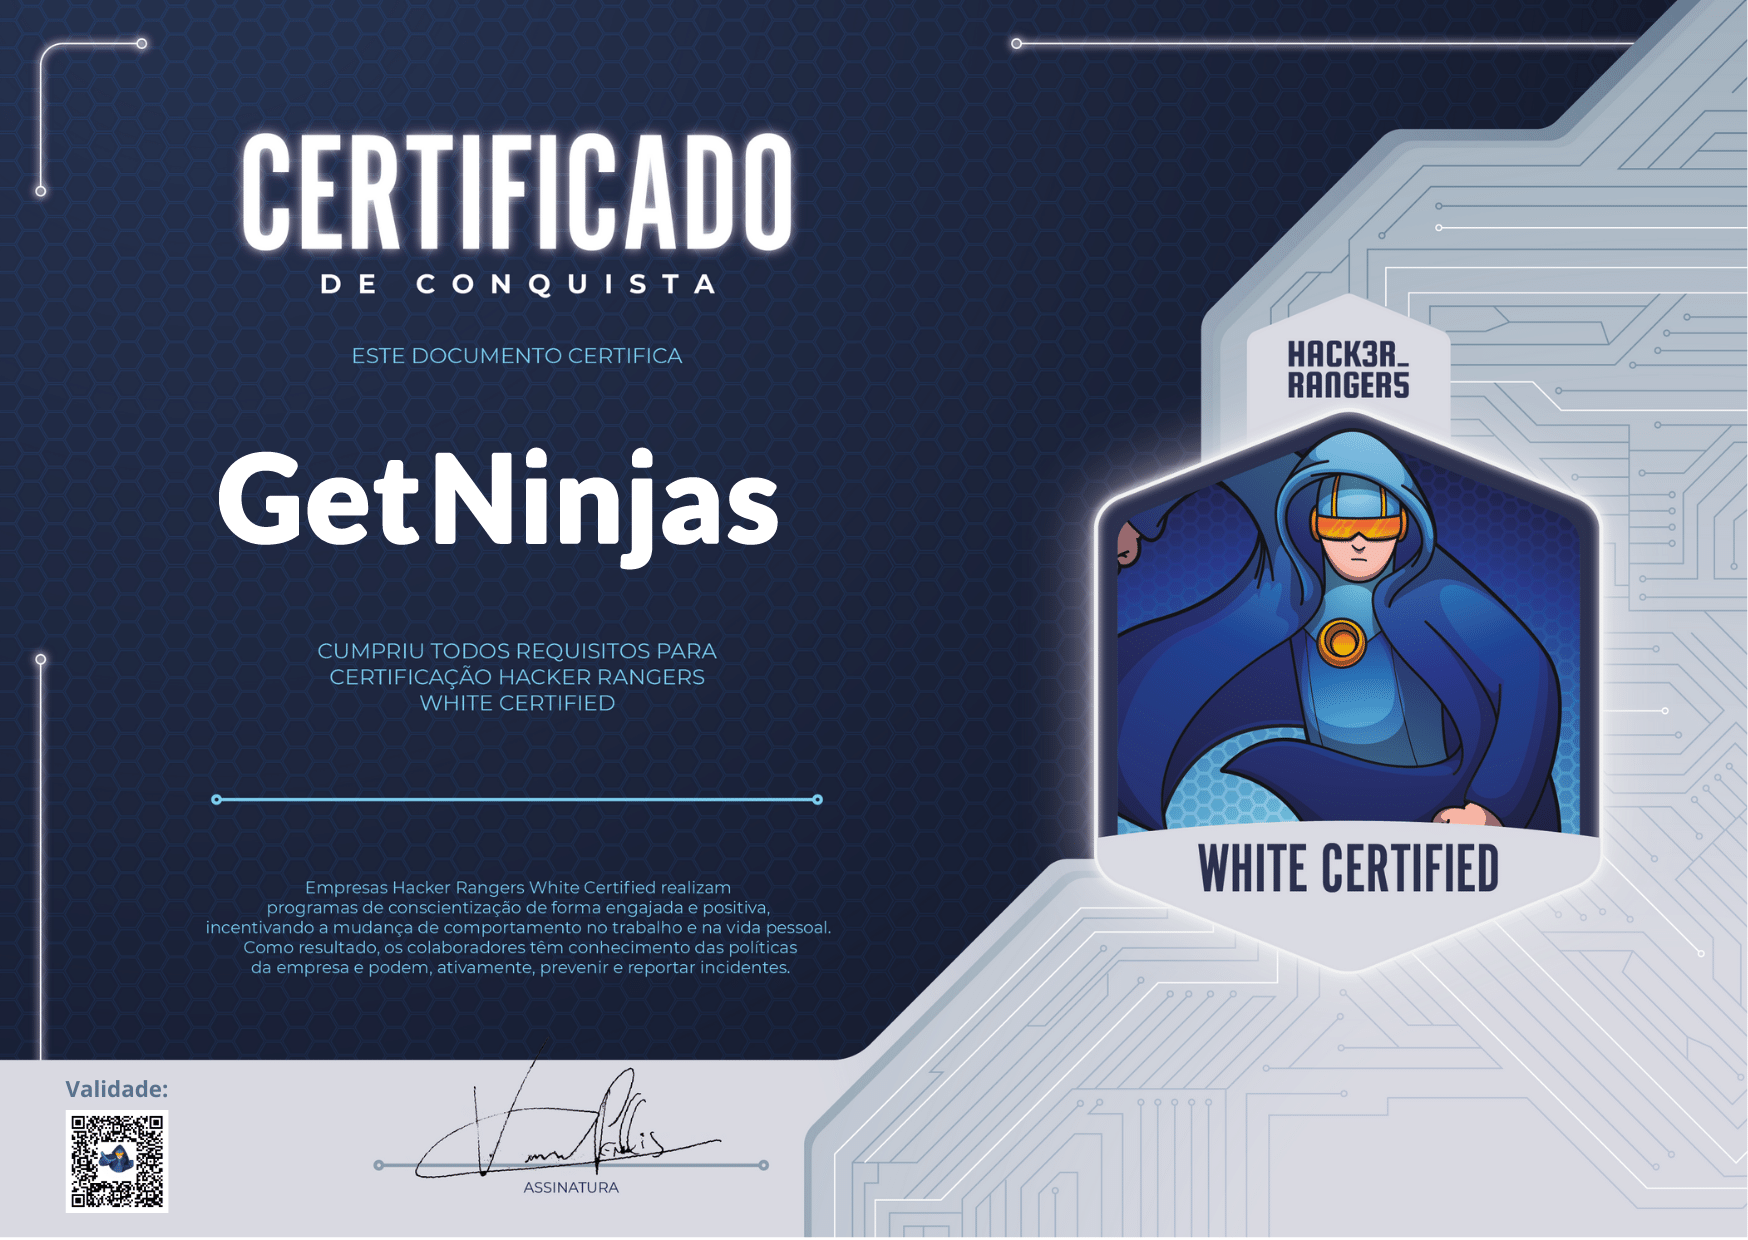 GetNinjas - Hacker Rangers White Certified